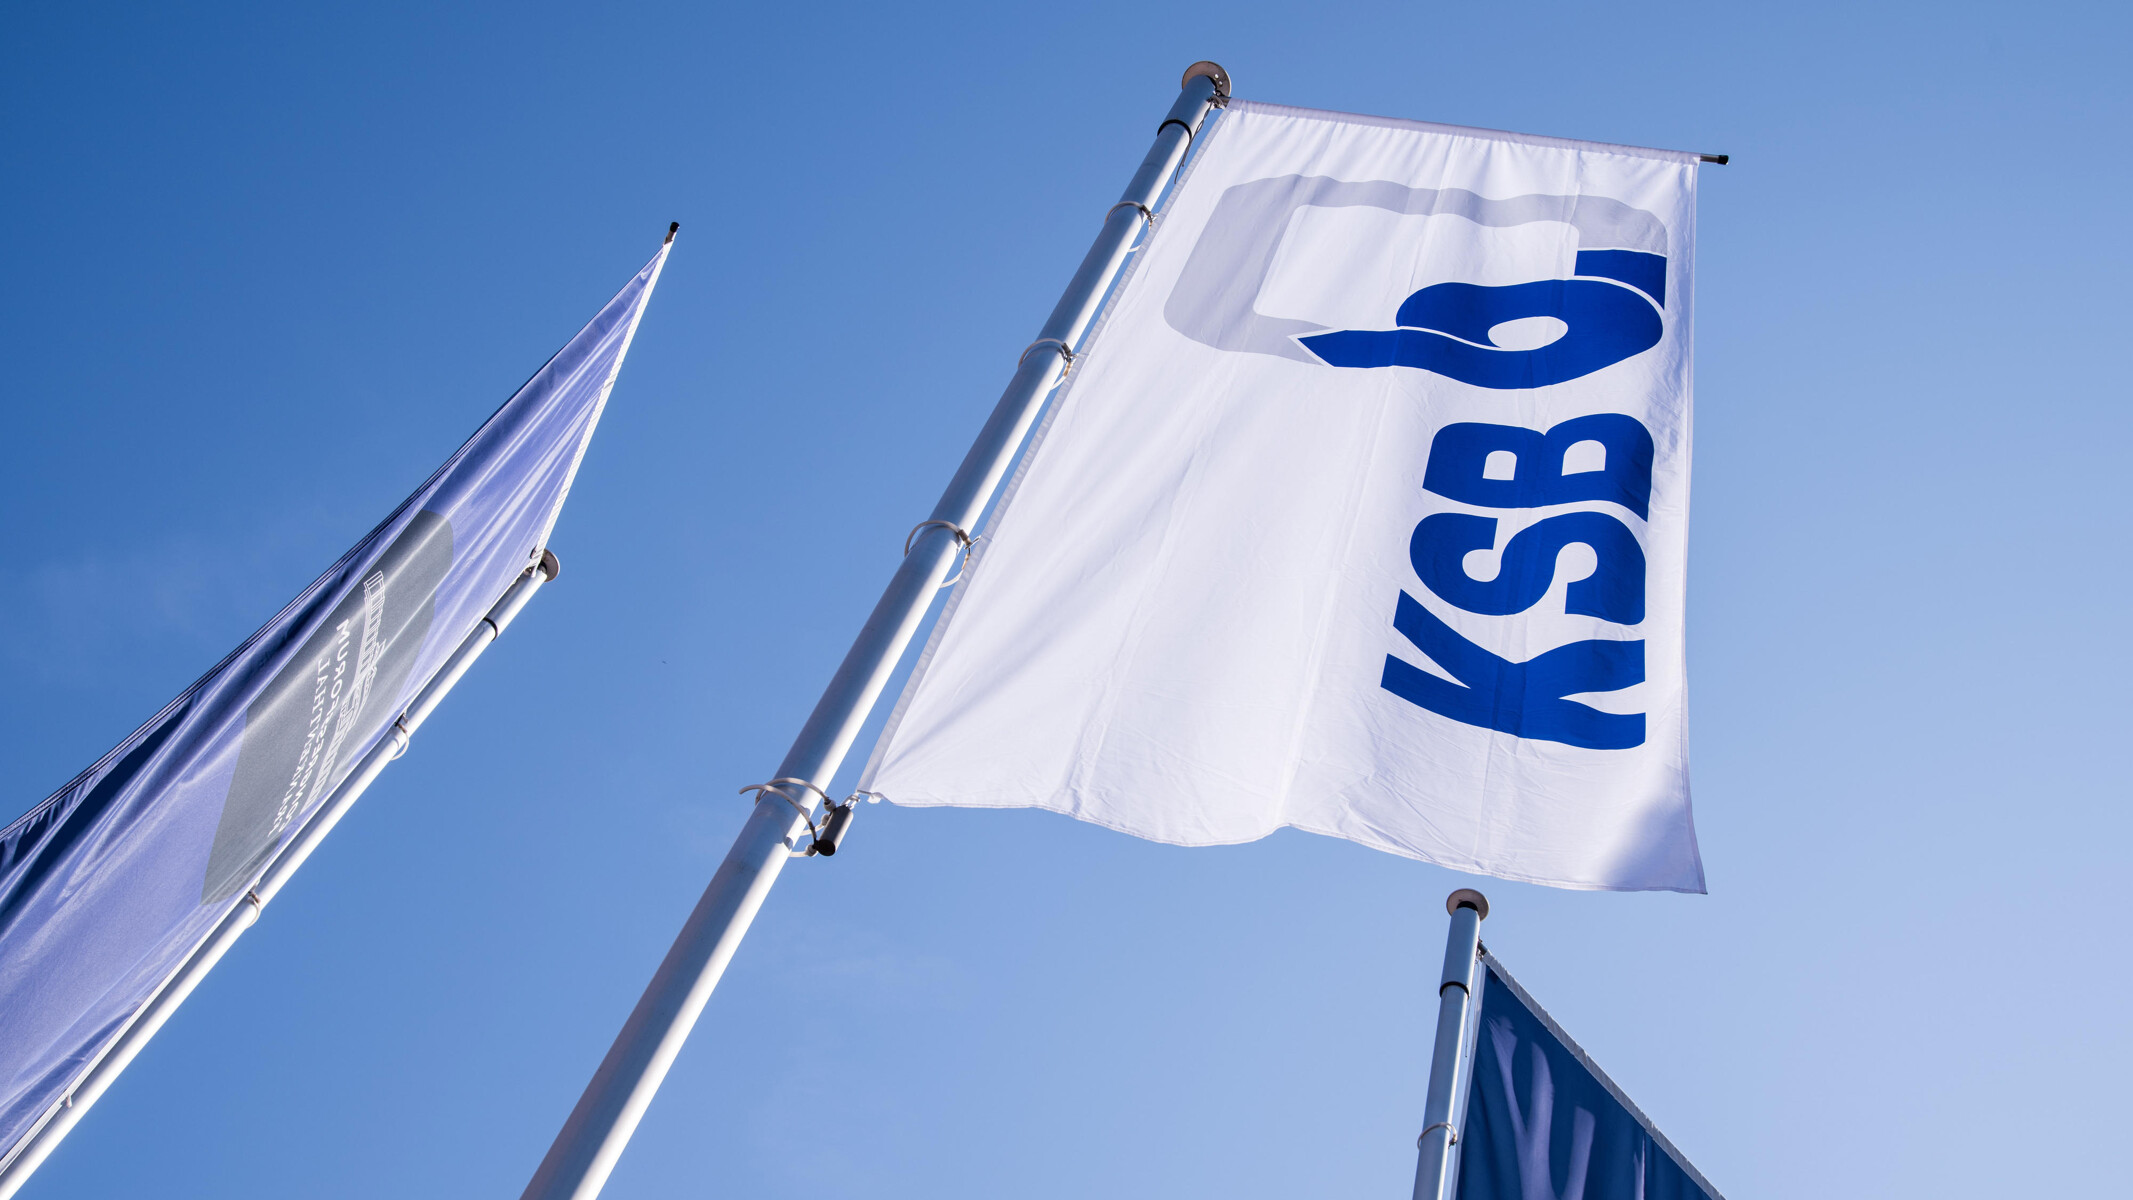 KSB flags against a blue sky